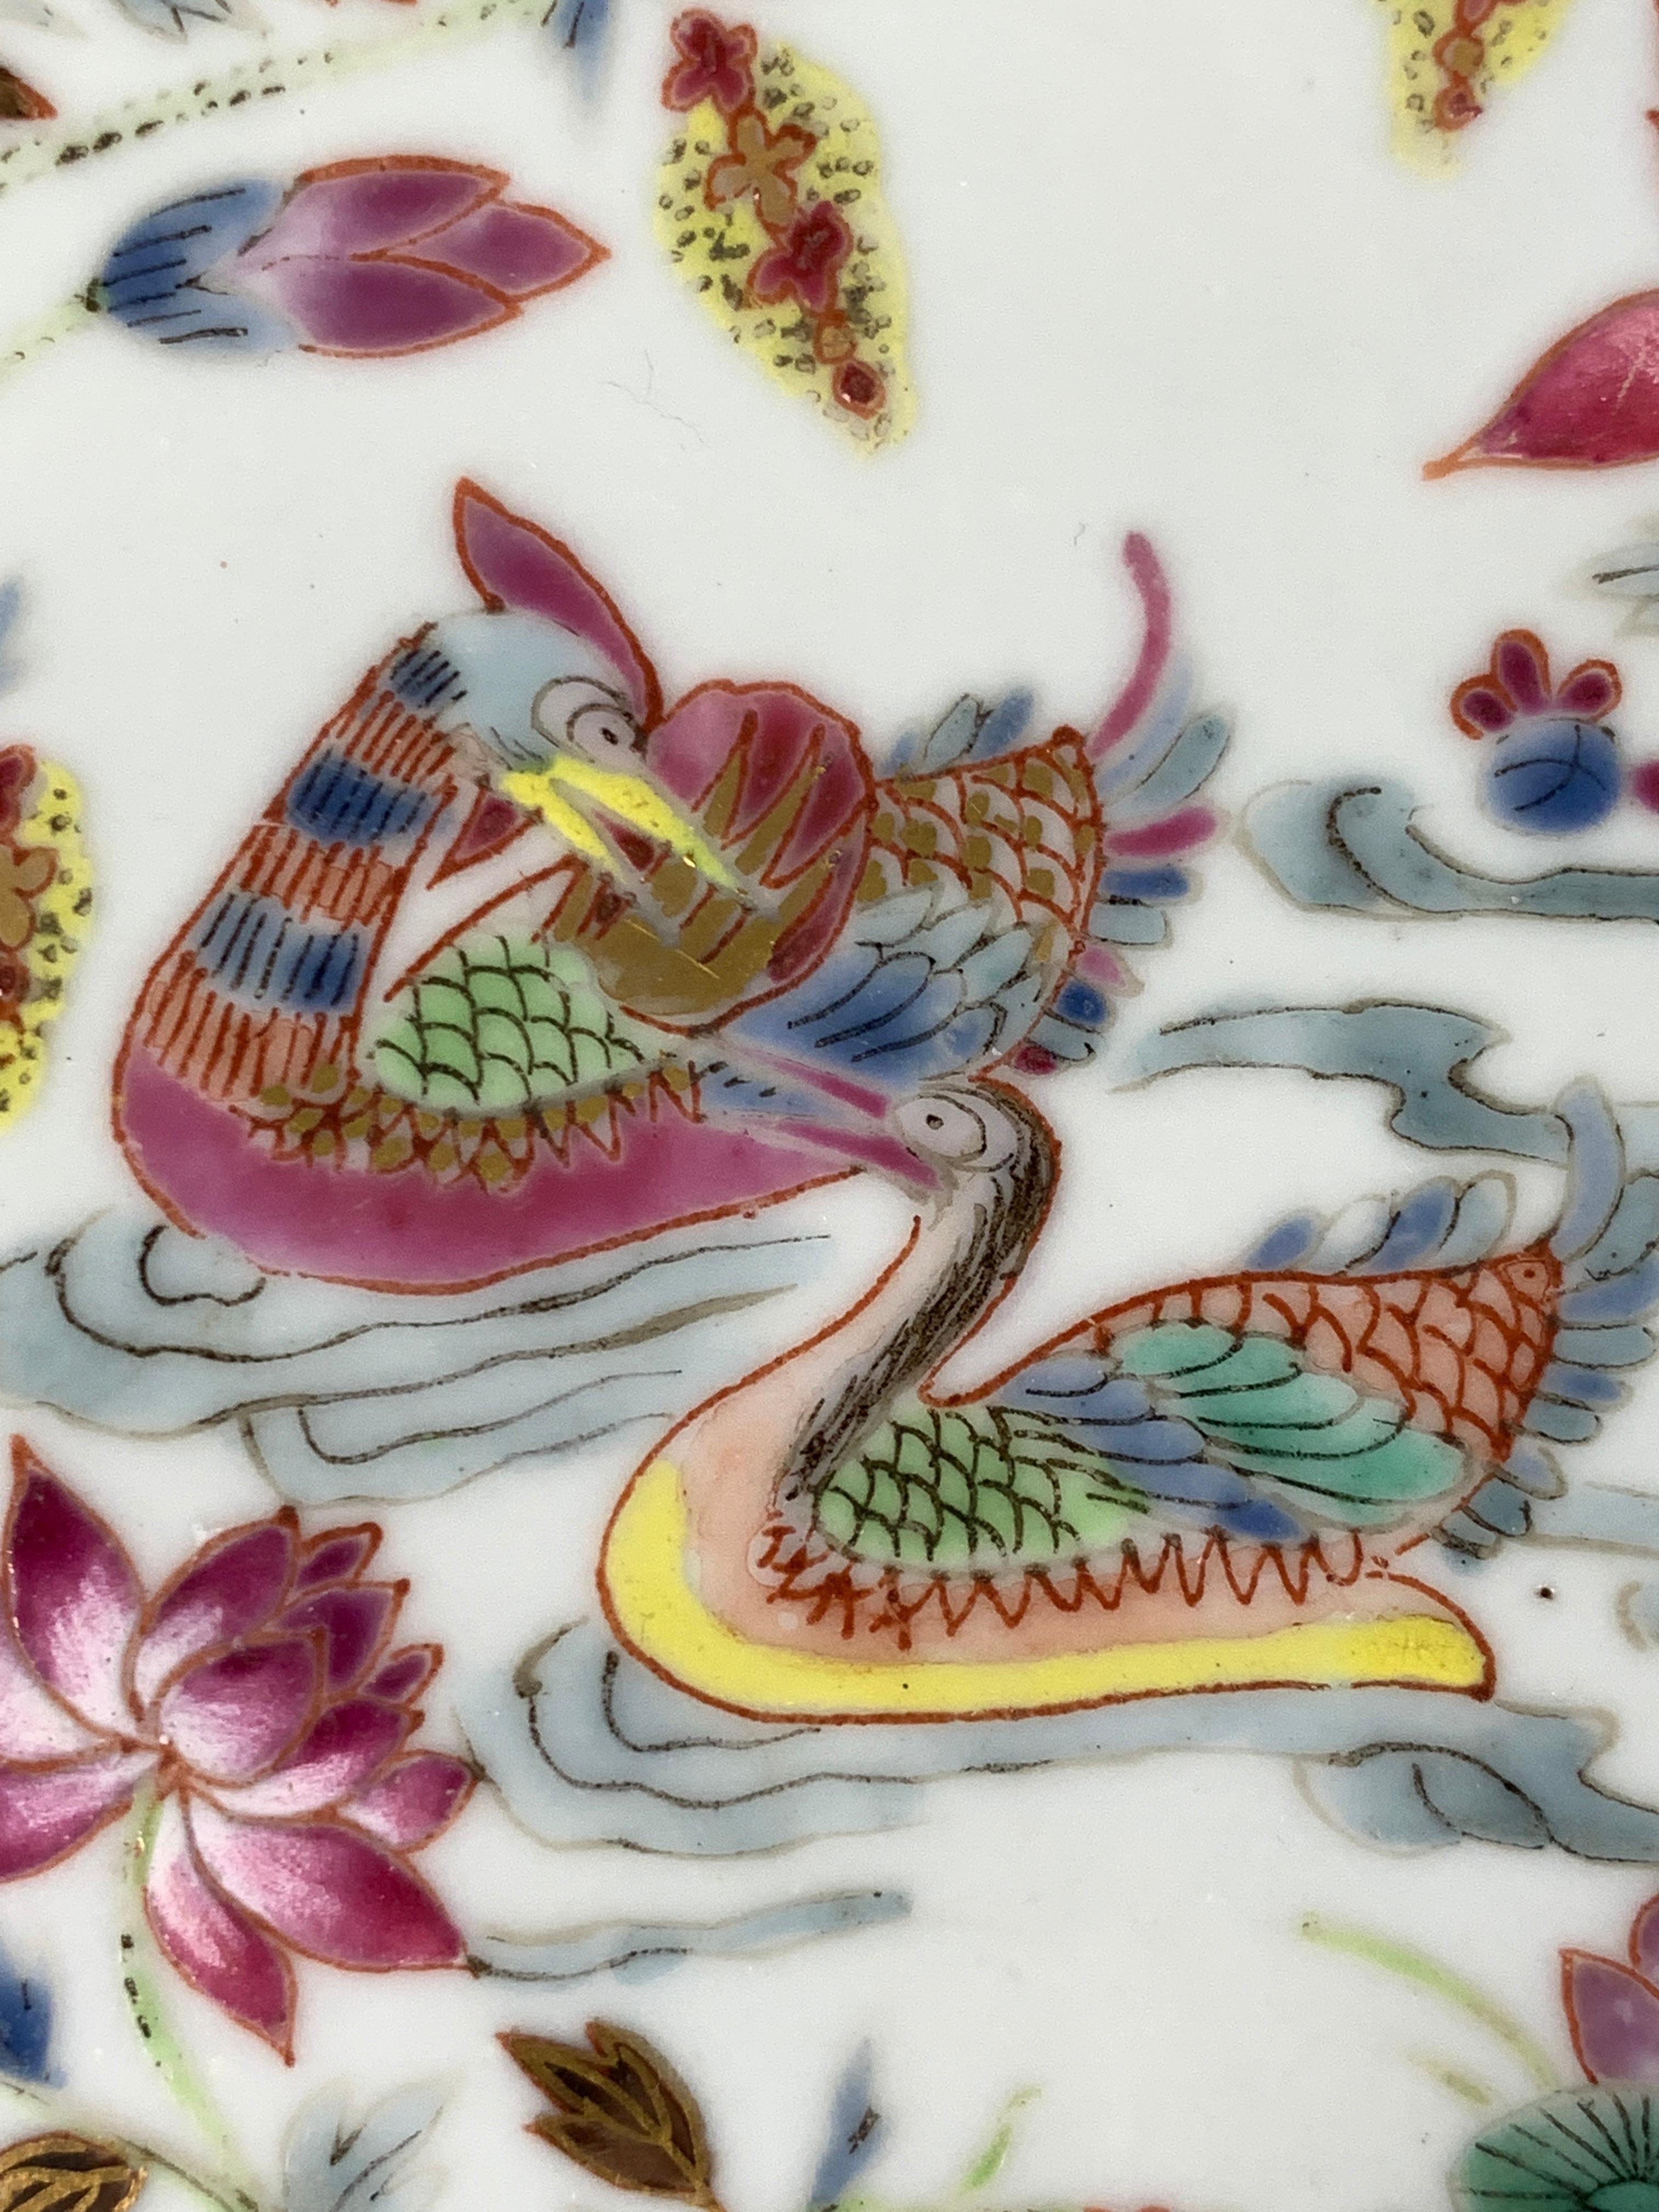 Réalisée au début du XIXe siècle, vers 1820, cette assiette de Canton rose est peinte à la main de huit immortels taoïstes, certains chevauchant de fabuleuses bêtes mythiques. La bordure est également décorée de motifs floraux. 
Un motif rose en nid